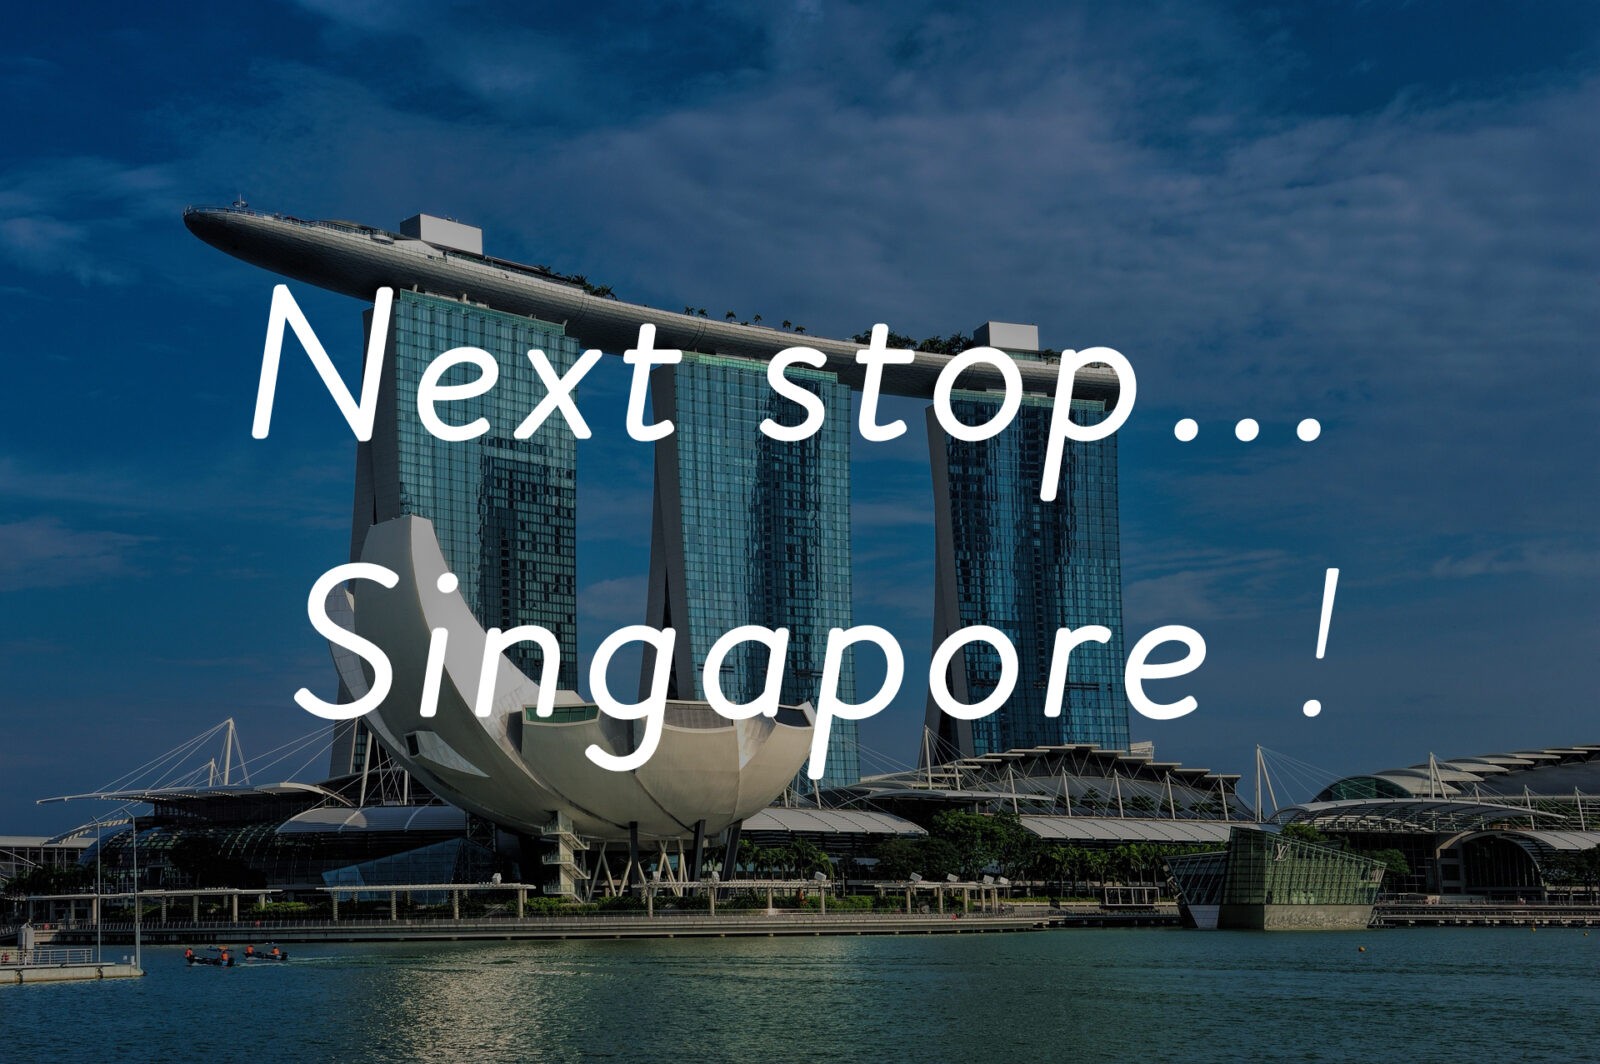 Next stop ... Singapore!